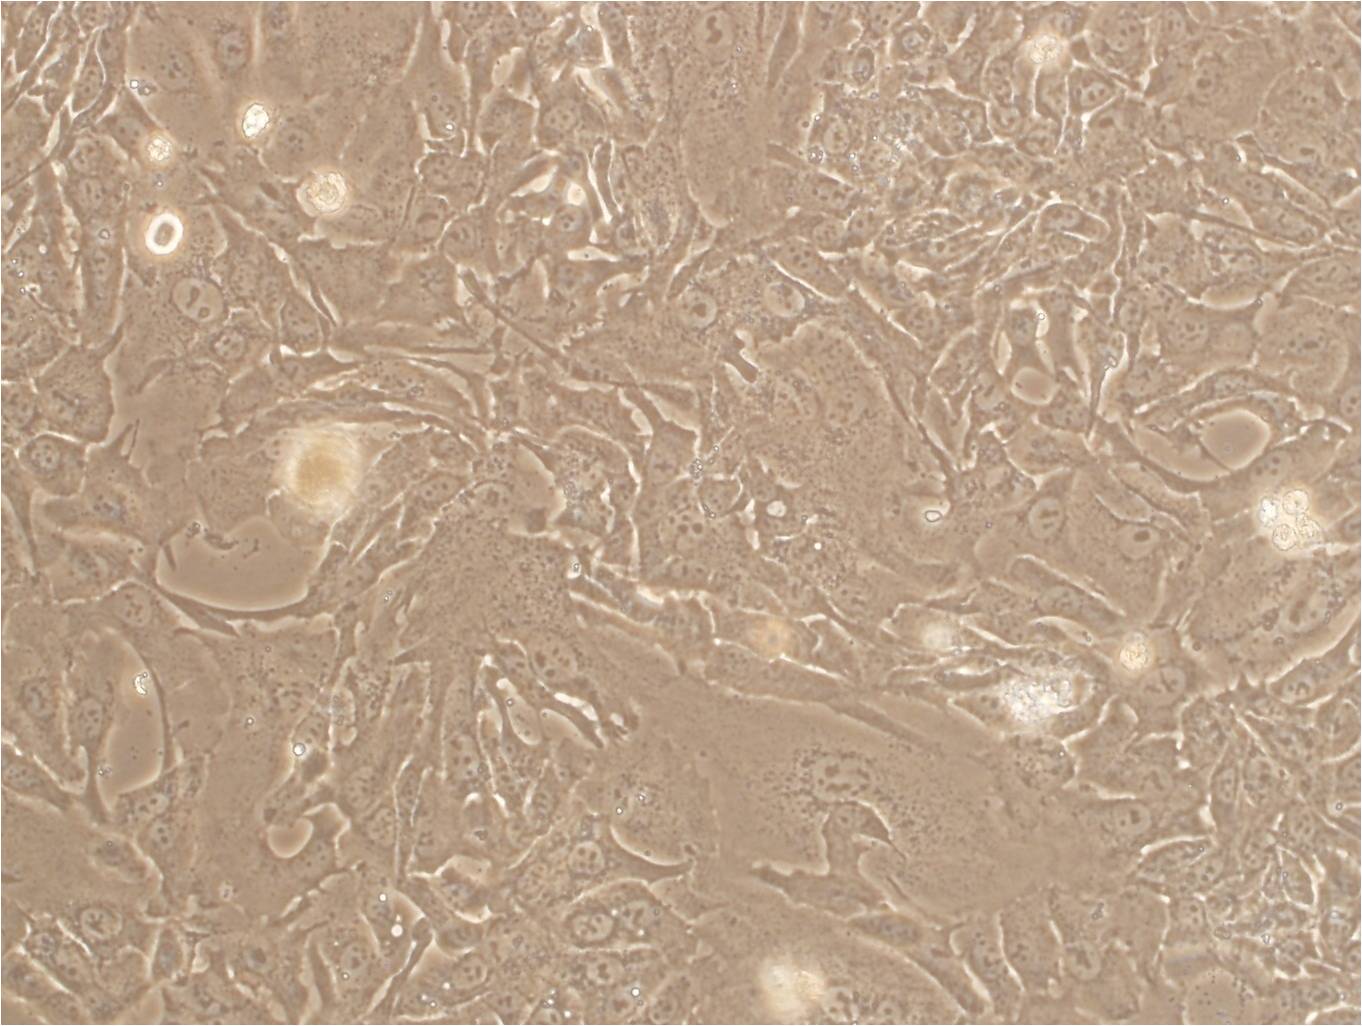 SK-OV-3 cell line人卵巢癌细胞系,SK-OV-3 cell line